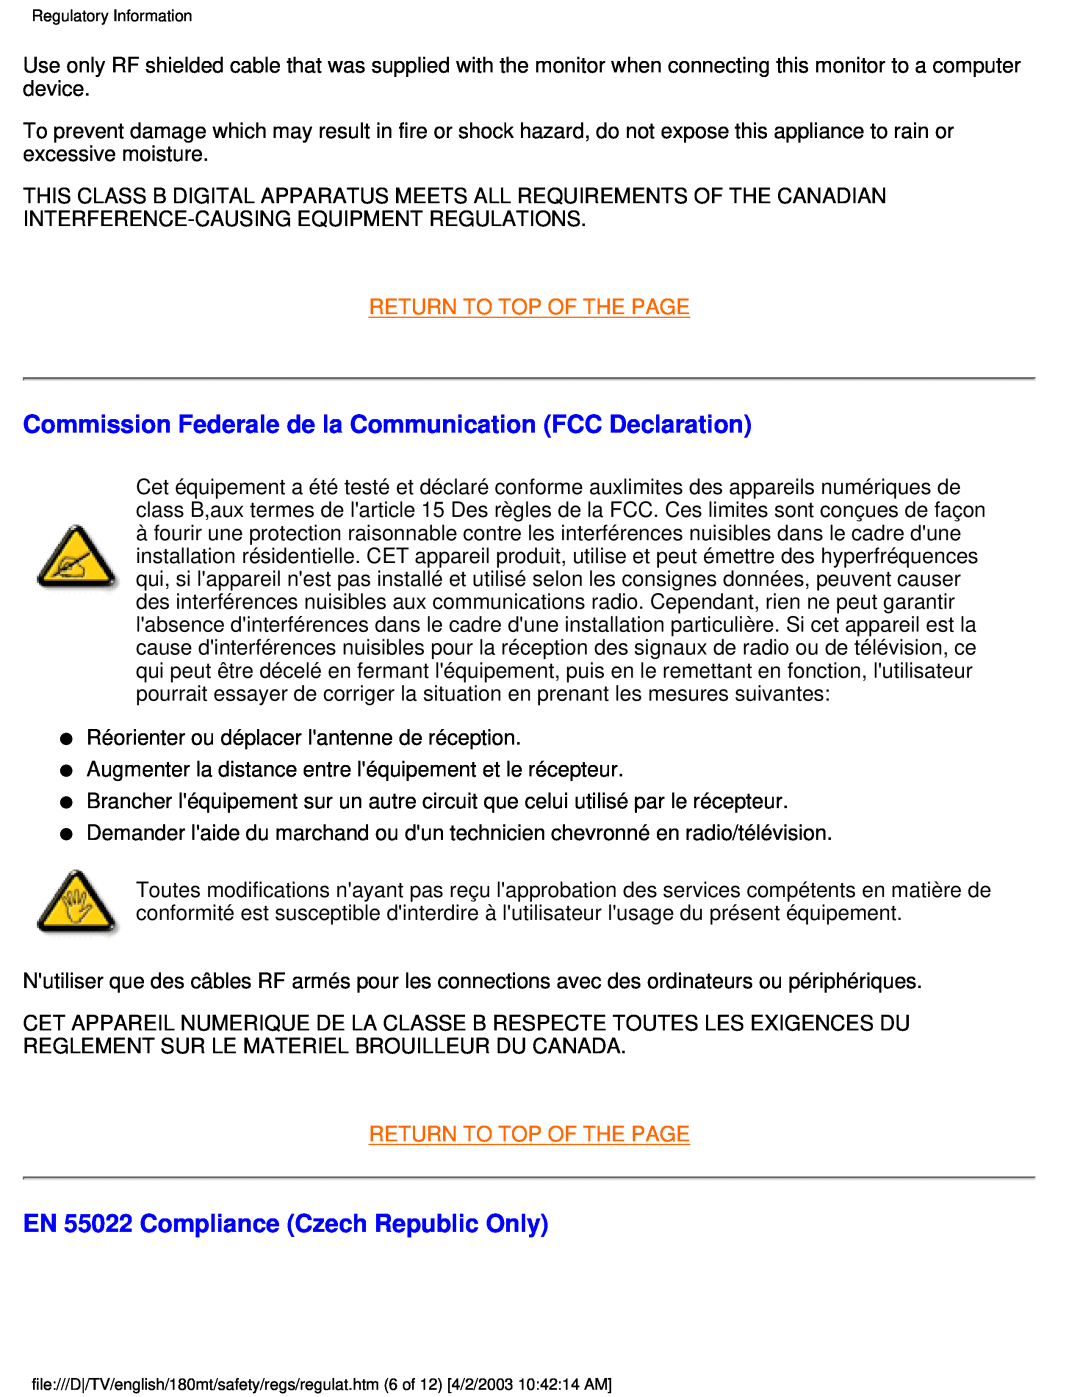 Philips 180MT manual Commission Federale de la Communication FCC Declaration, EN 55022 Compliance Czech Republic Only 